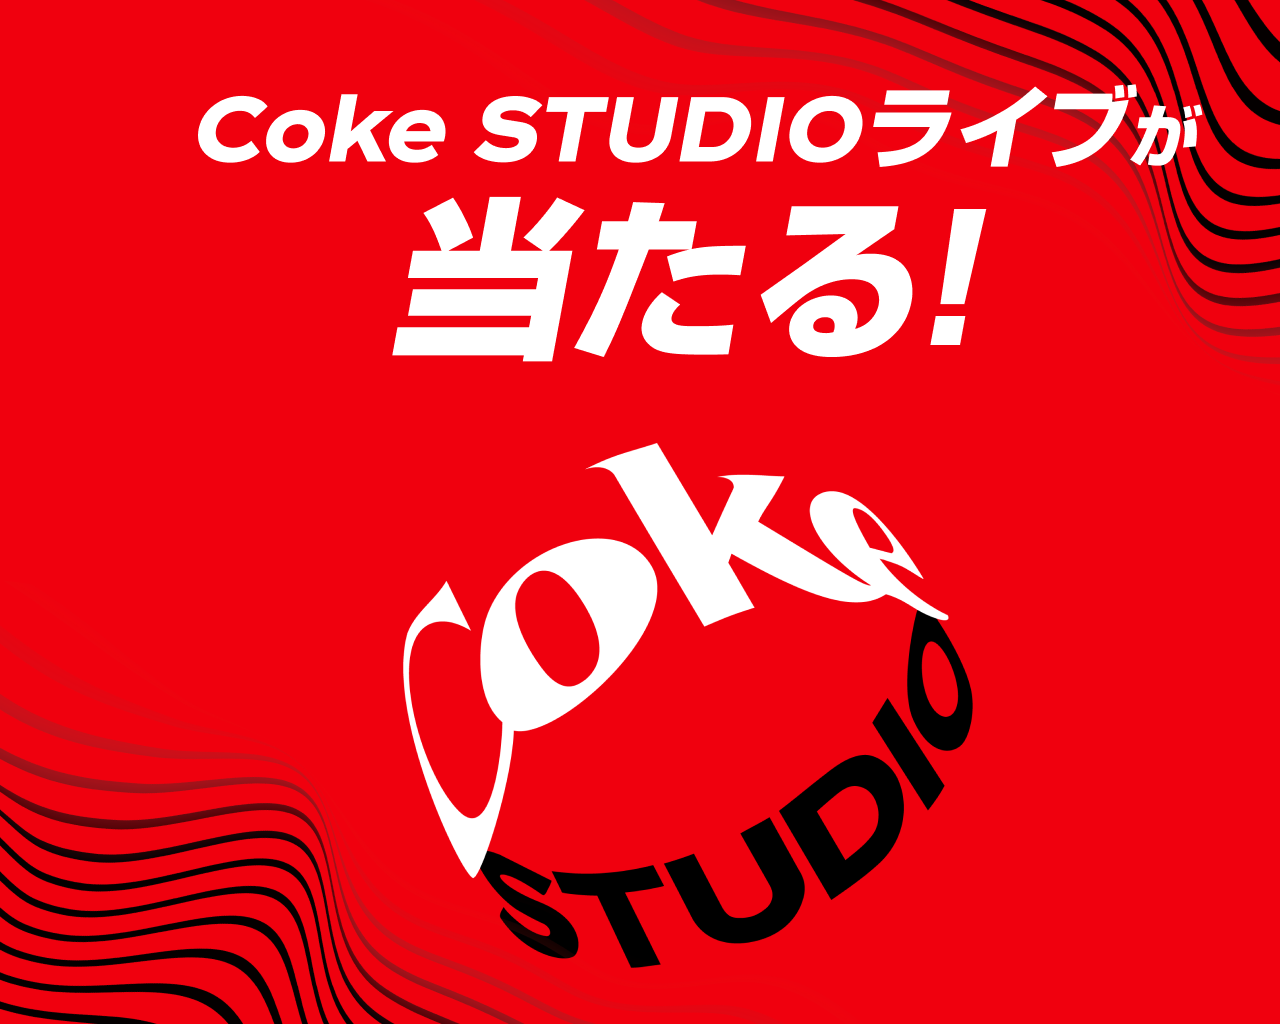 対象のコカ・コーラを買うとCoke STUDIOライブが当たる！その場で当たるオリジナルグッズも！Coke ONアプリから応募しよう。